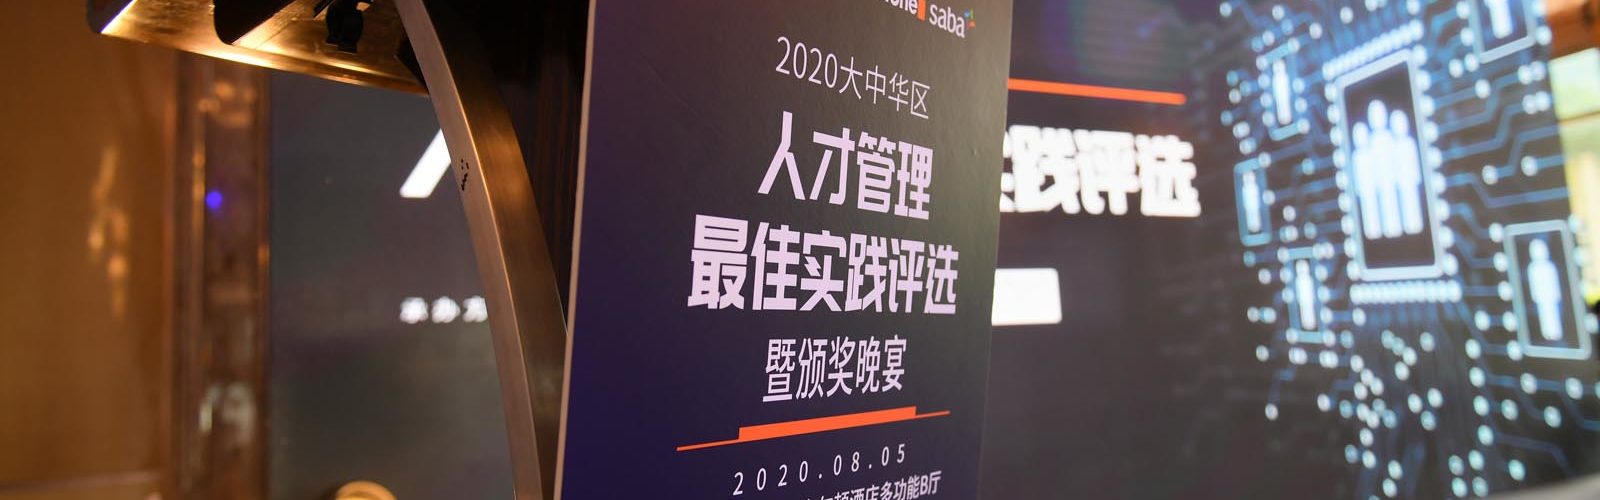 灵北制药中国荣获2020学习变革最佳实践奖插图7